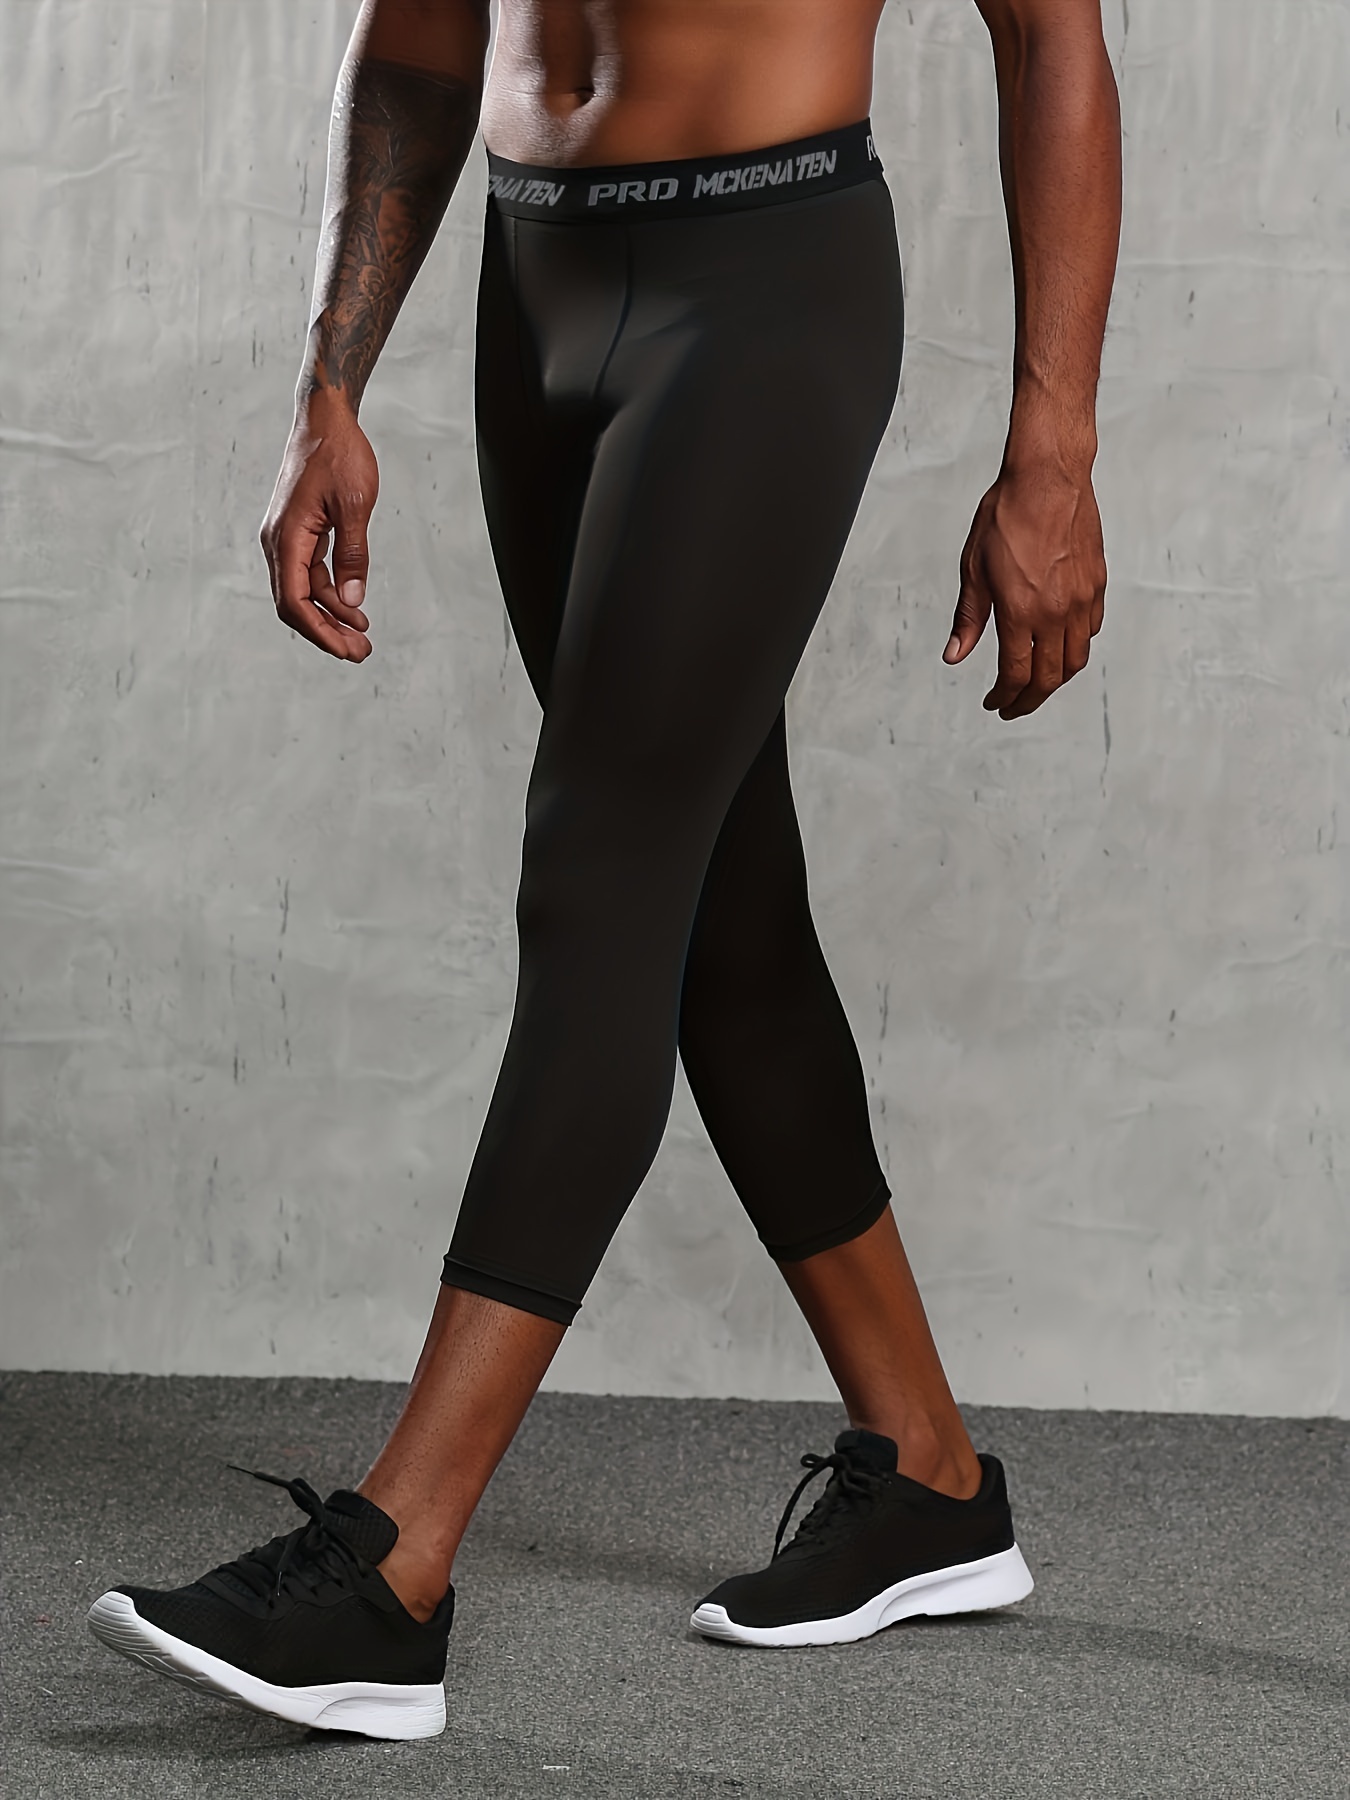 Mens 3/4 Black Compression Gym Legging Skins Exercise Leggings Running  Pants M L